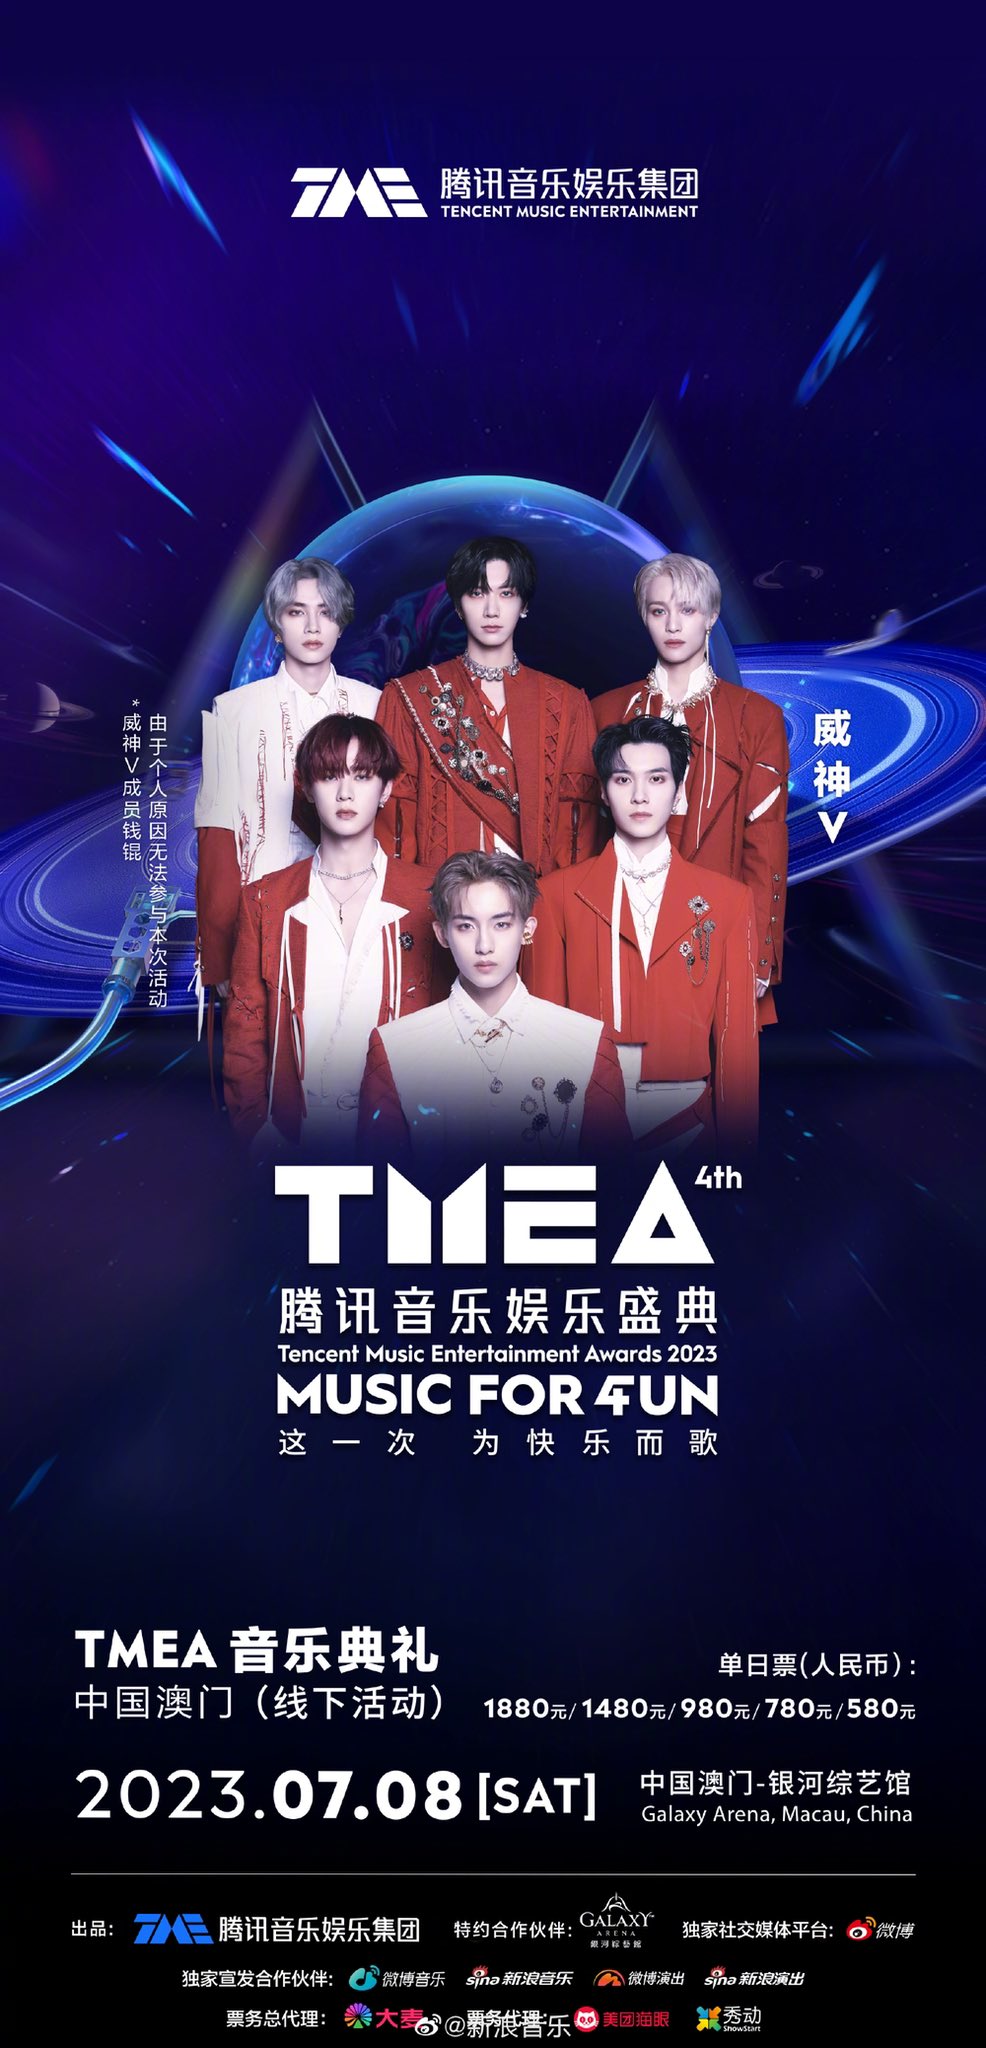 คอนเฟิร์มทุกวง Line Up งาน TMEA ของ Tencent Music ที่มาเก๊า HYBE YG SM